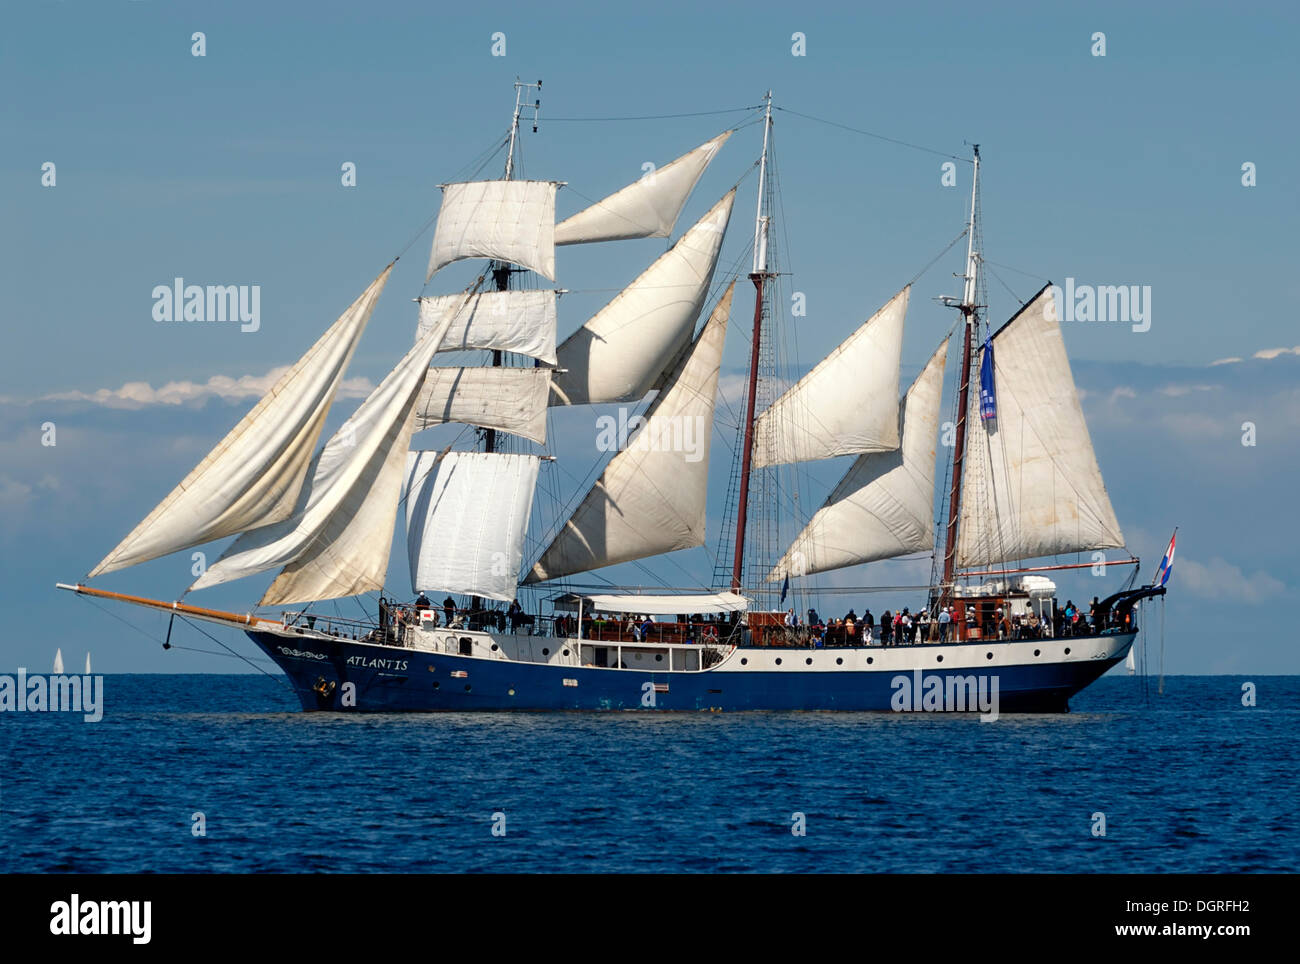 Completamente aparejados la goleta de tres mástiles, Atlantis, tradicional barco, Tall Ship, la Semana de Kiel 2010, el fiordo de Kiel, Schleswig-Holstein Foto de stock